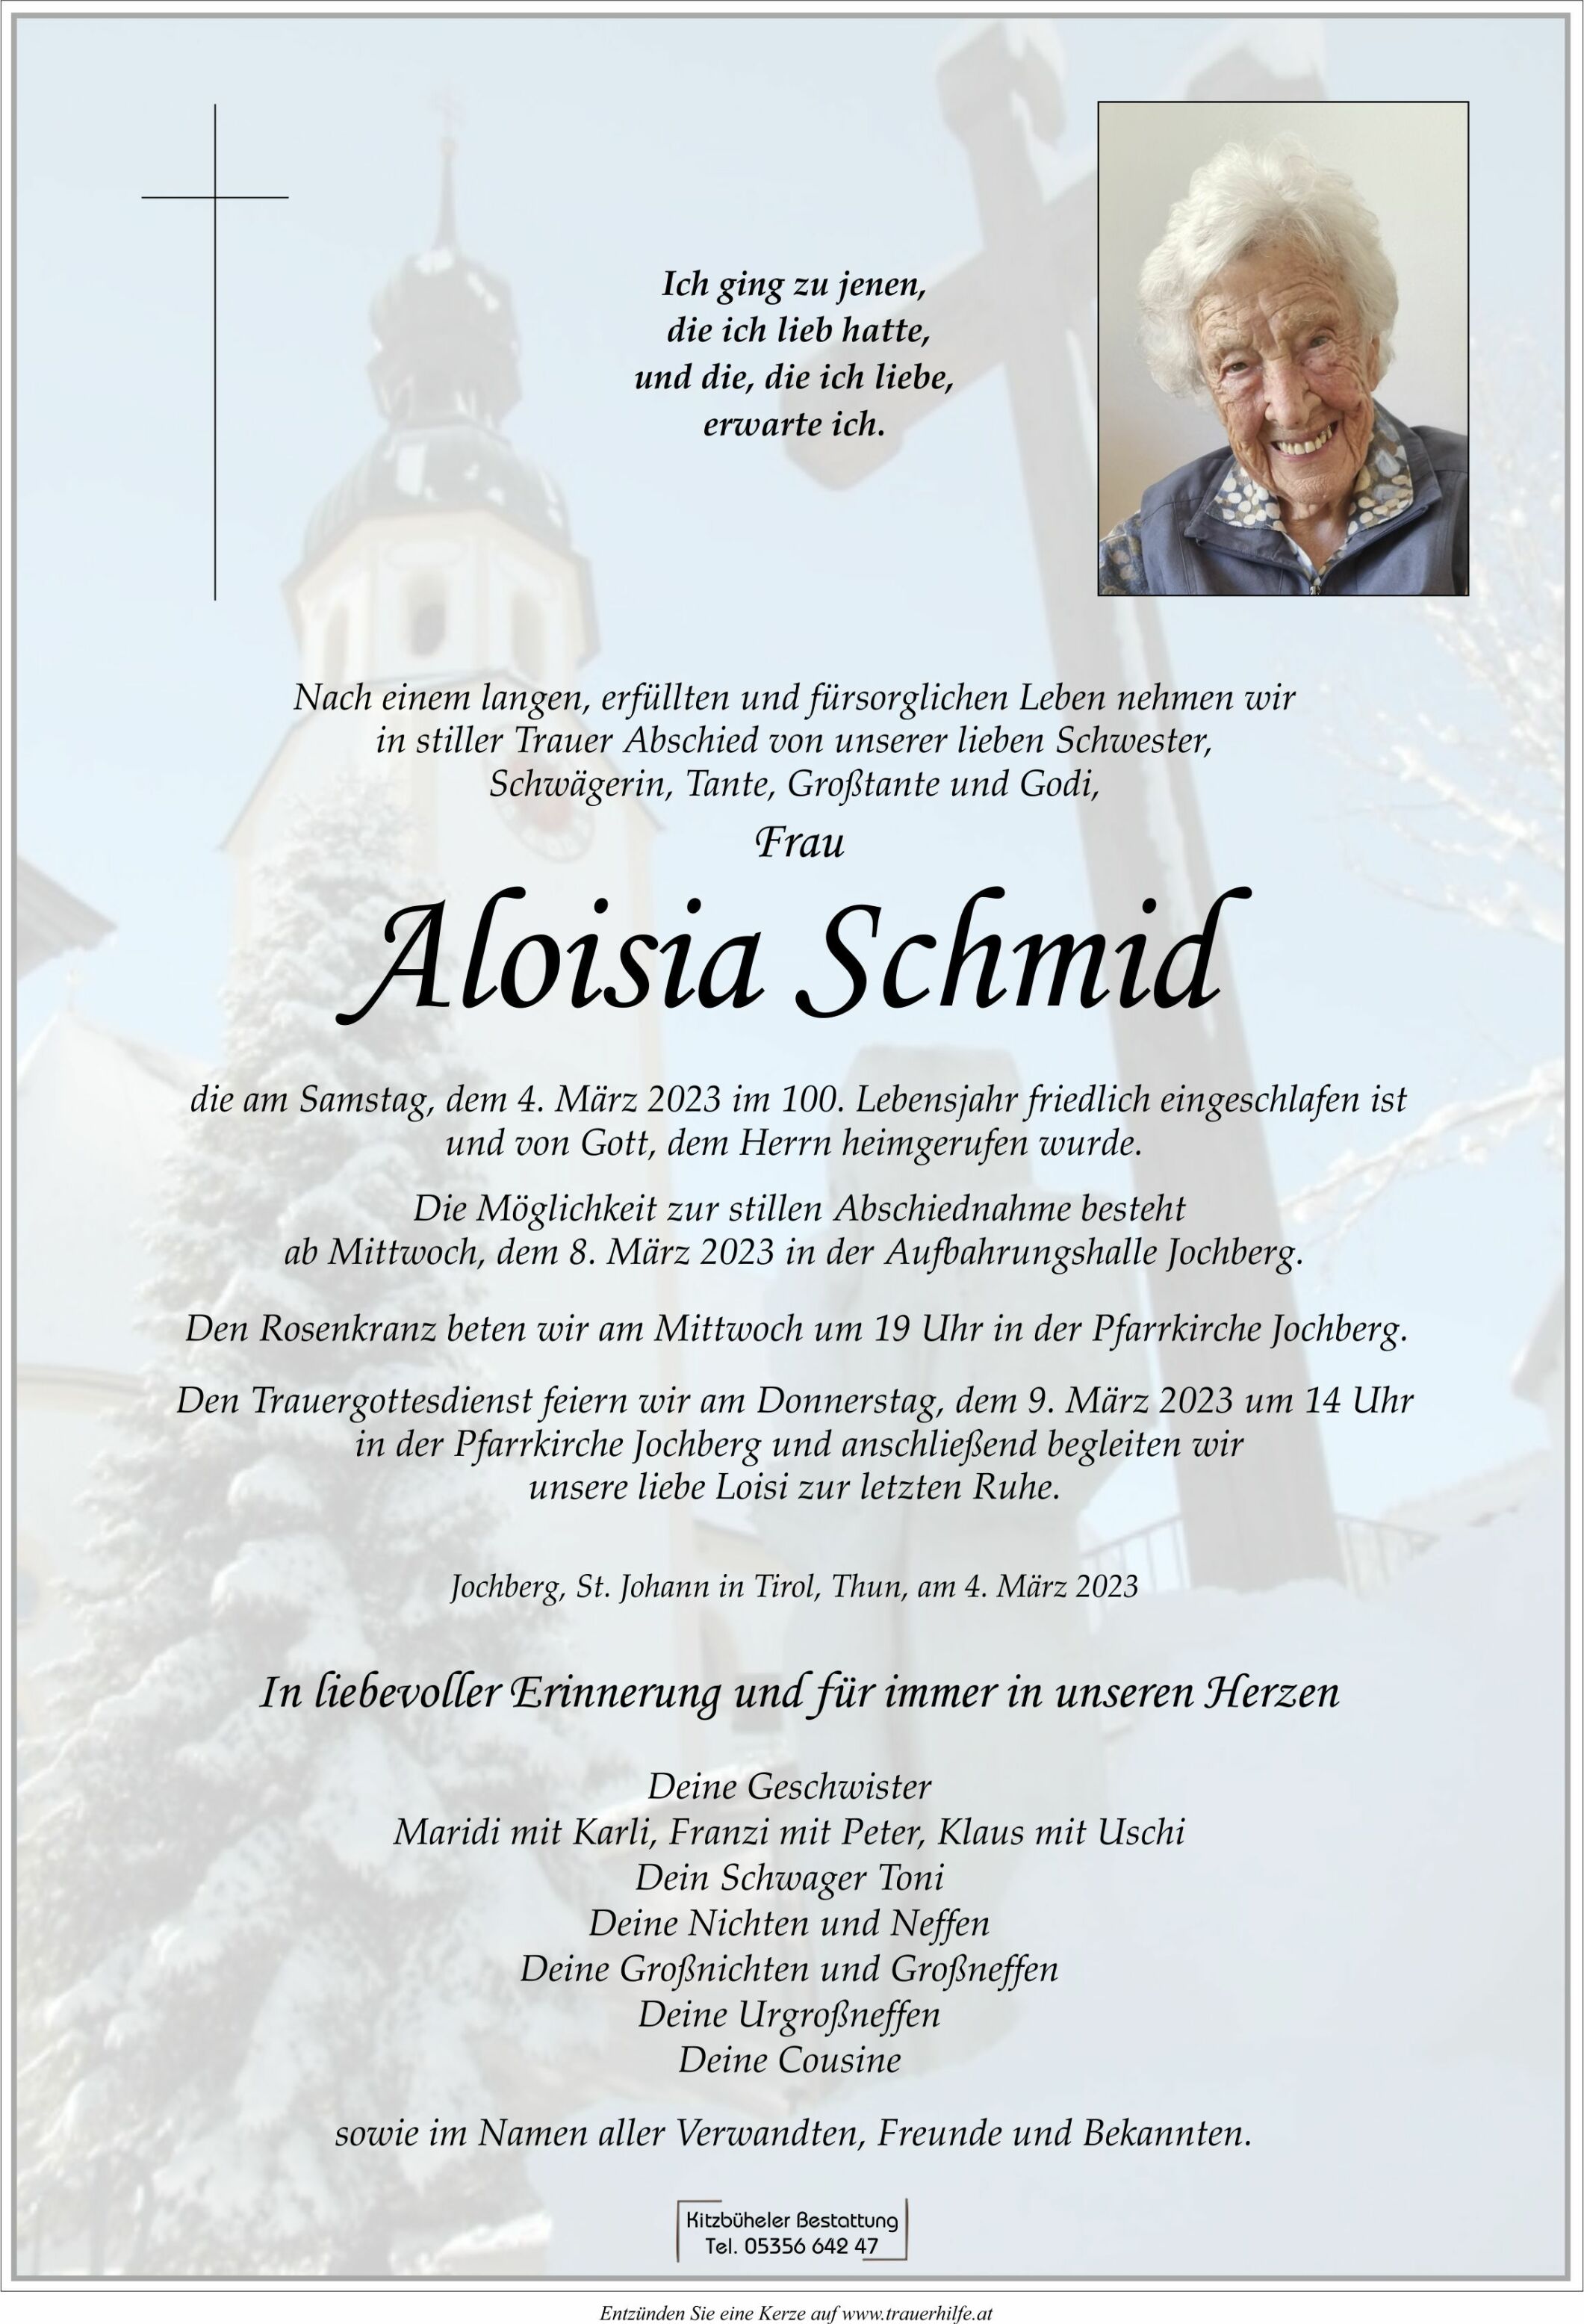 Aloisia Schmid